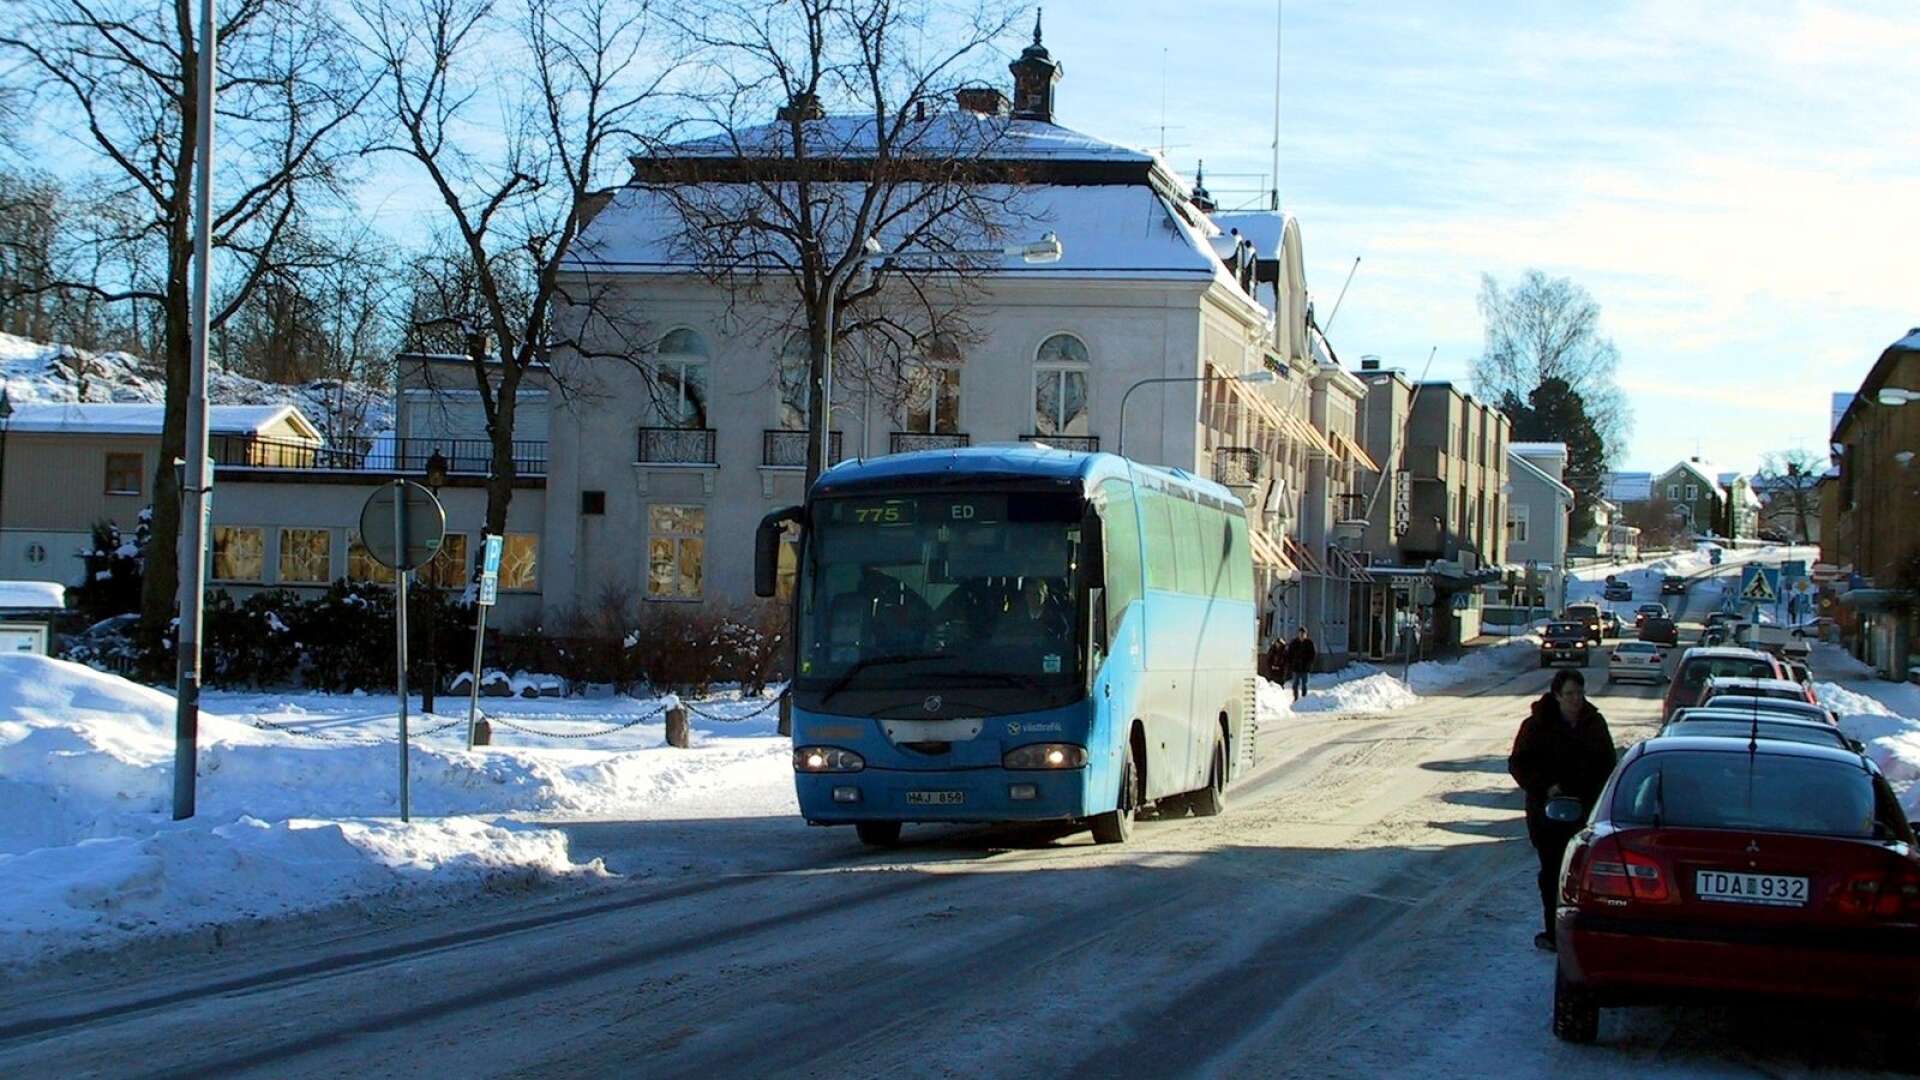 Bussresor till Bengtsfors och Ed blev på onsdagen betydligt billigare än tidigare. Men samtidigt försvann Åmåls undantag för resor till Säffle och Svaneholm. De resorna blir dyrare.